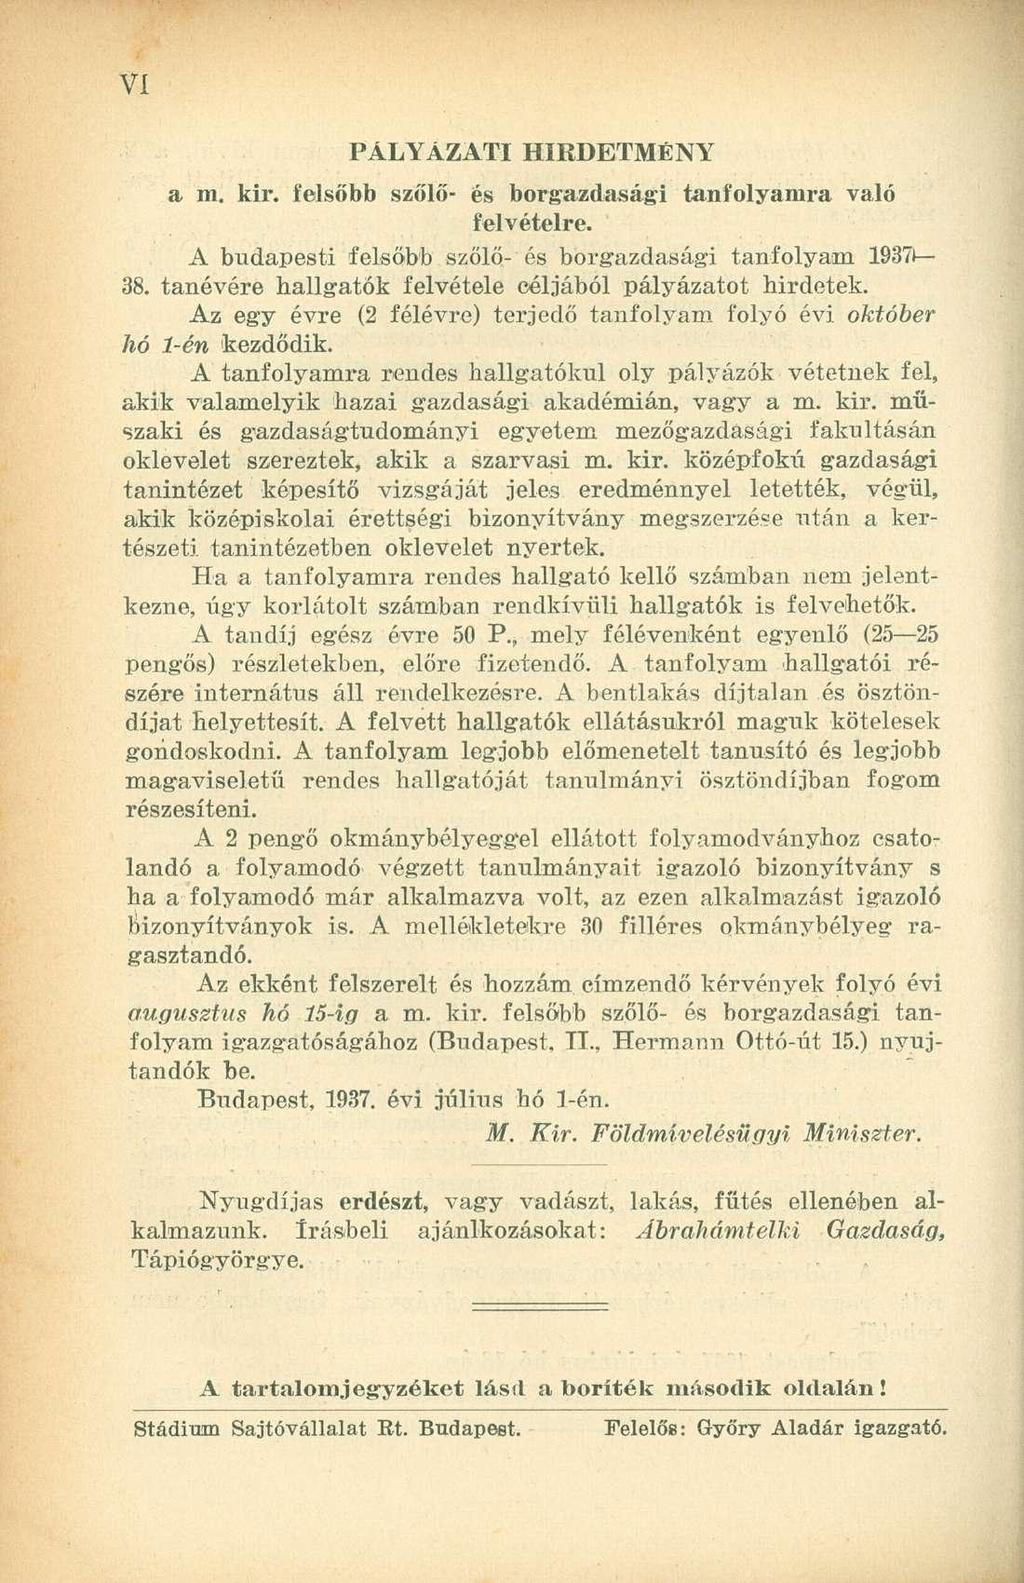 PÁLYÁZATI HIRDETMÉNY a m. kir. felsőbb szőlő- és borgazdasági tanfolyamra való felvételre. A budapesti felsőbb szőlő- és borgazdasági tanfolyam 1937t 38.